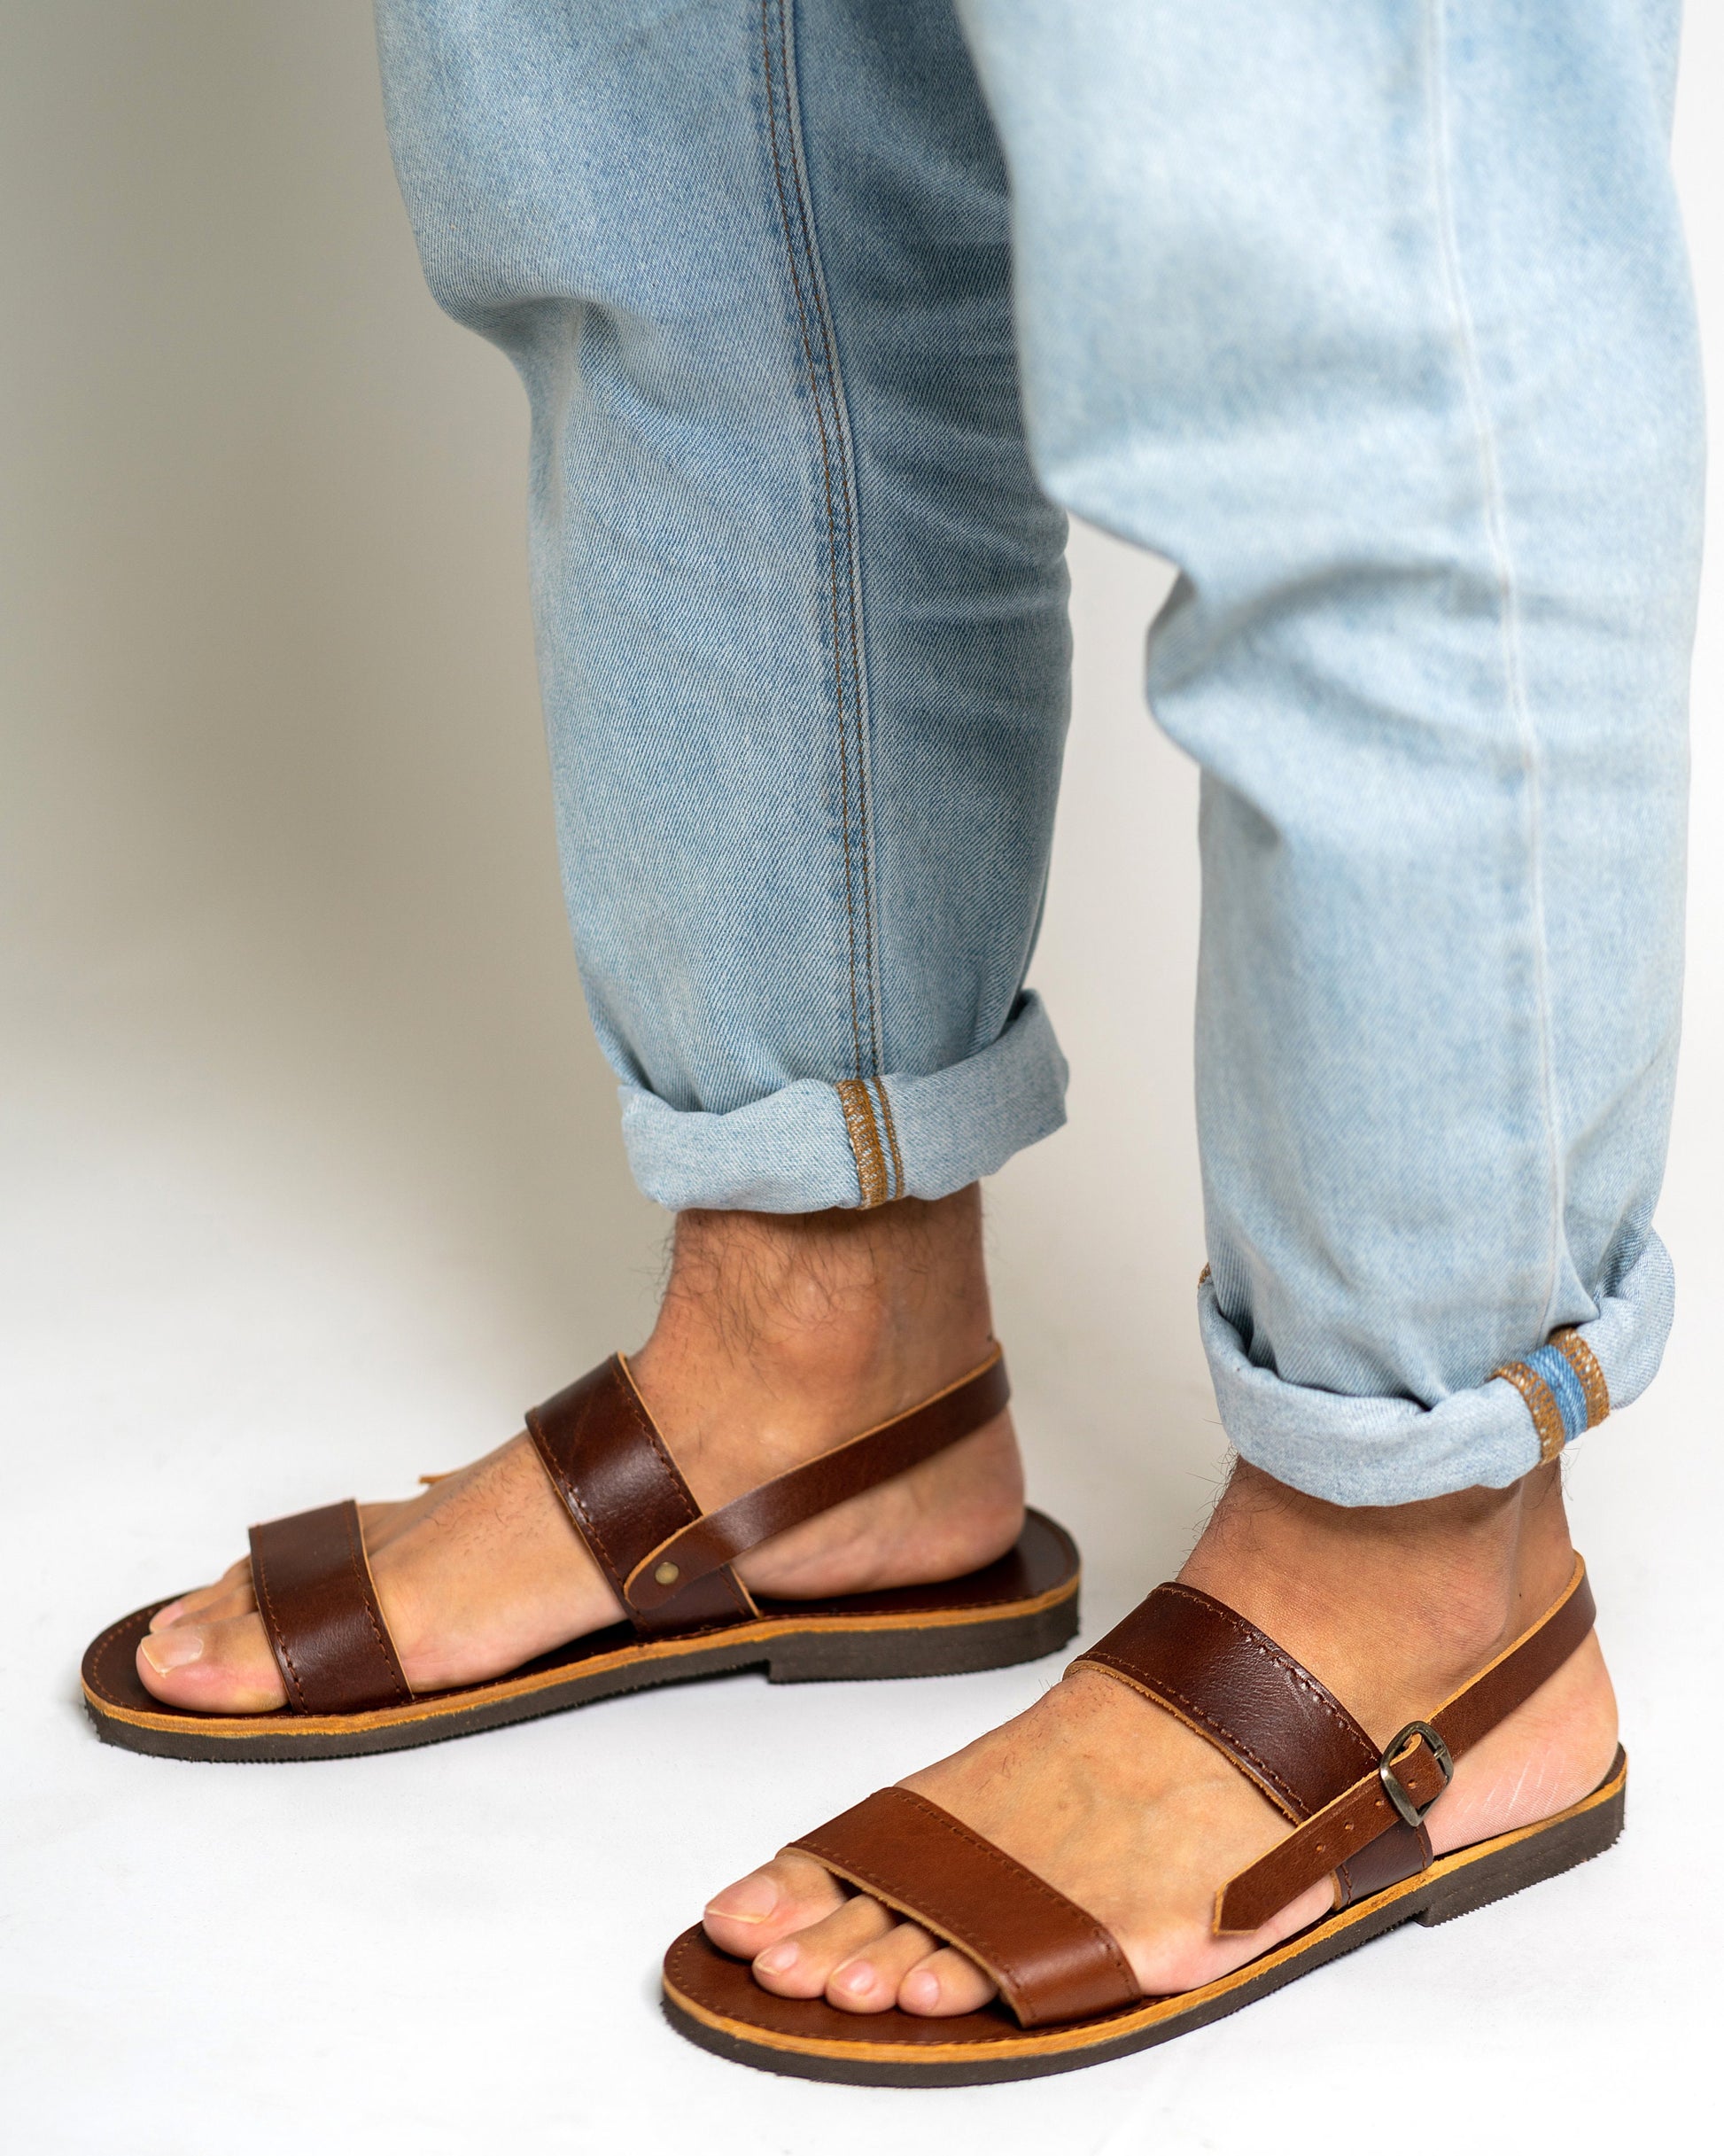 Leather sandals men, Greek leather sandals, Natural strappy sandals, Flat mens leather sandals, Sandalen herren, Sandales homme